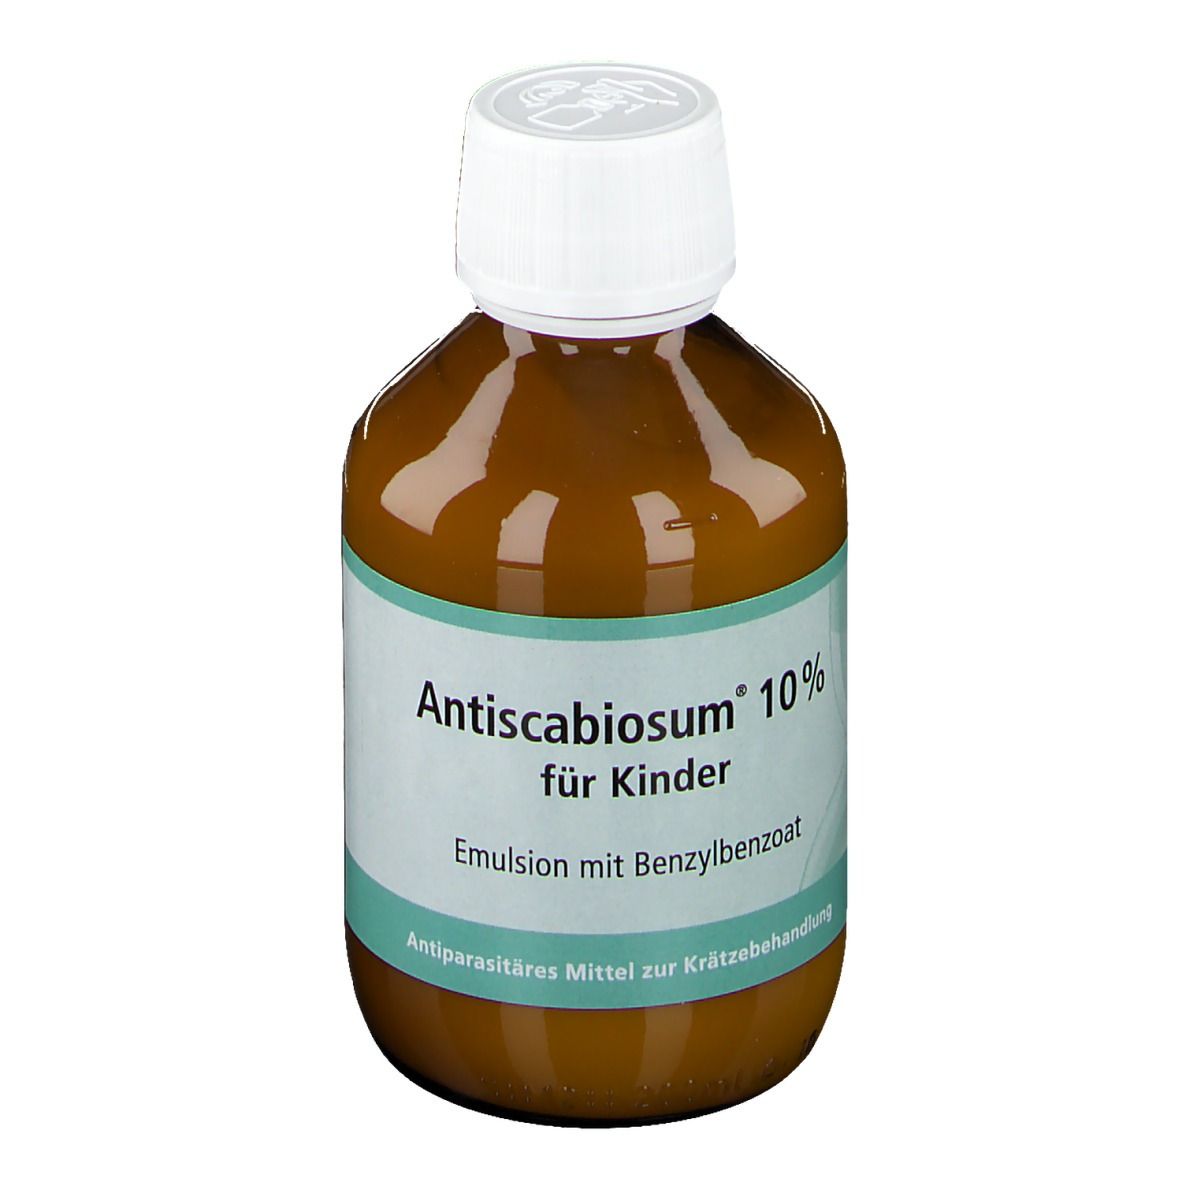 Antiscabiosum® 10 % für Kinder